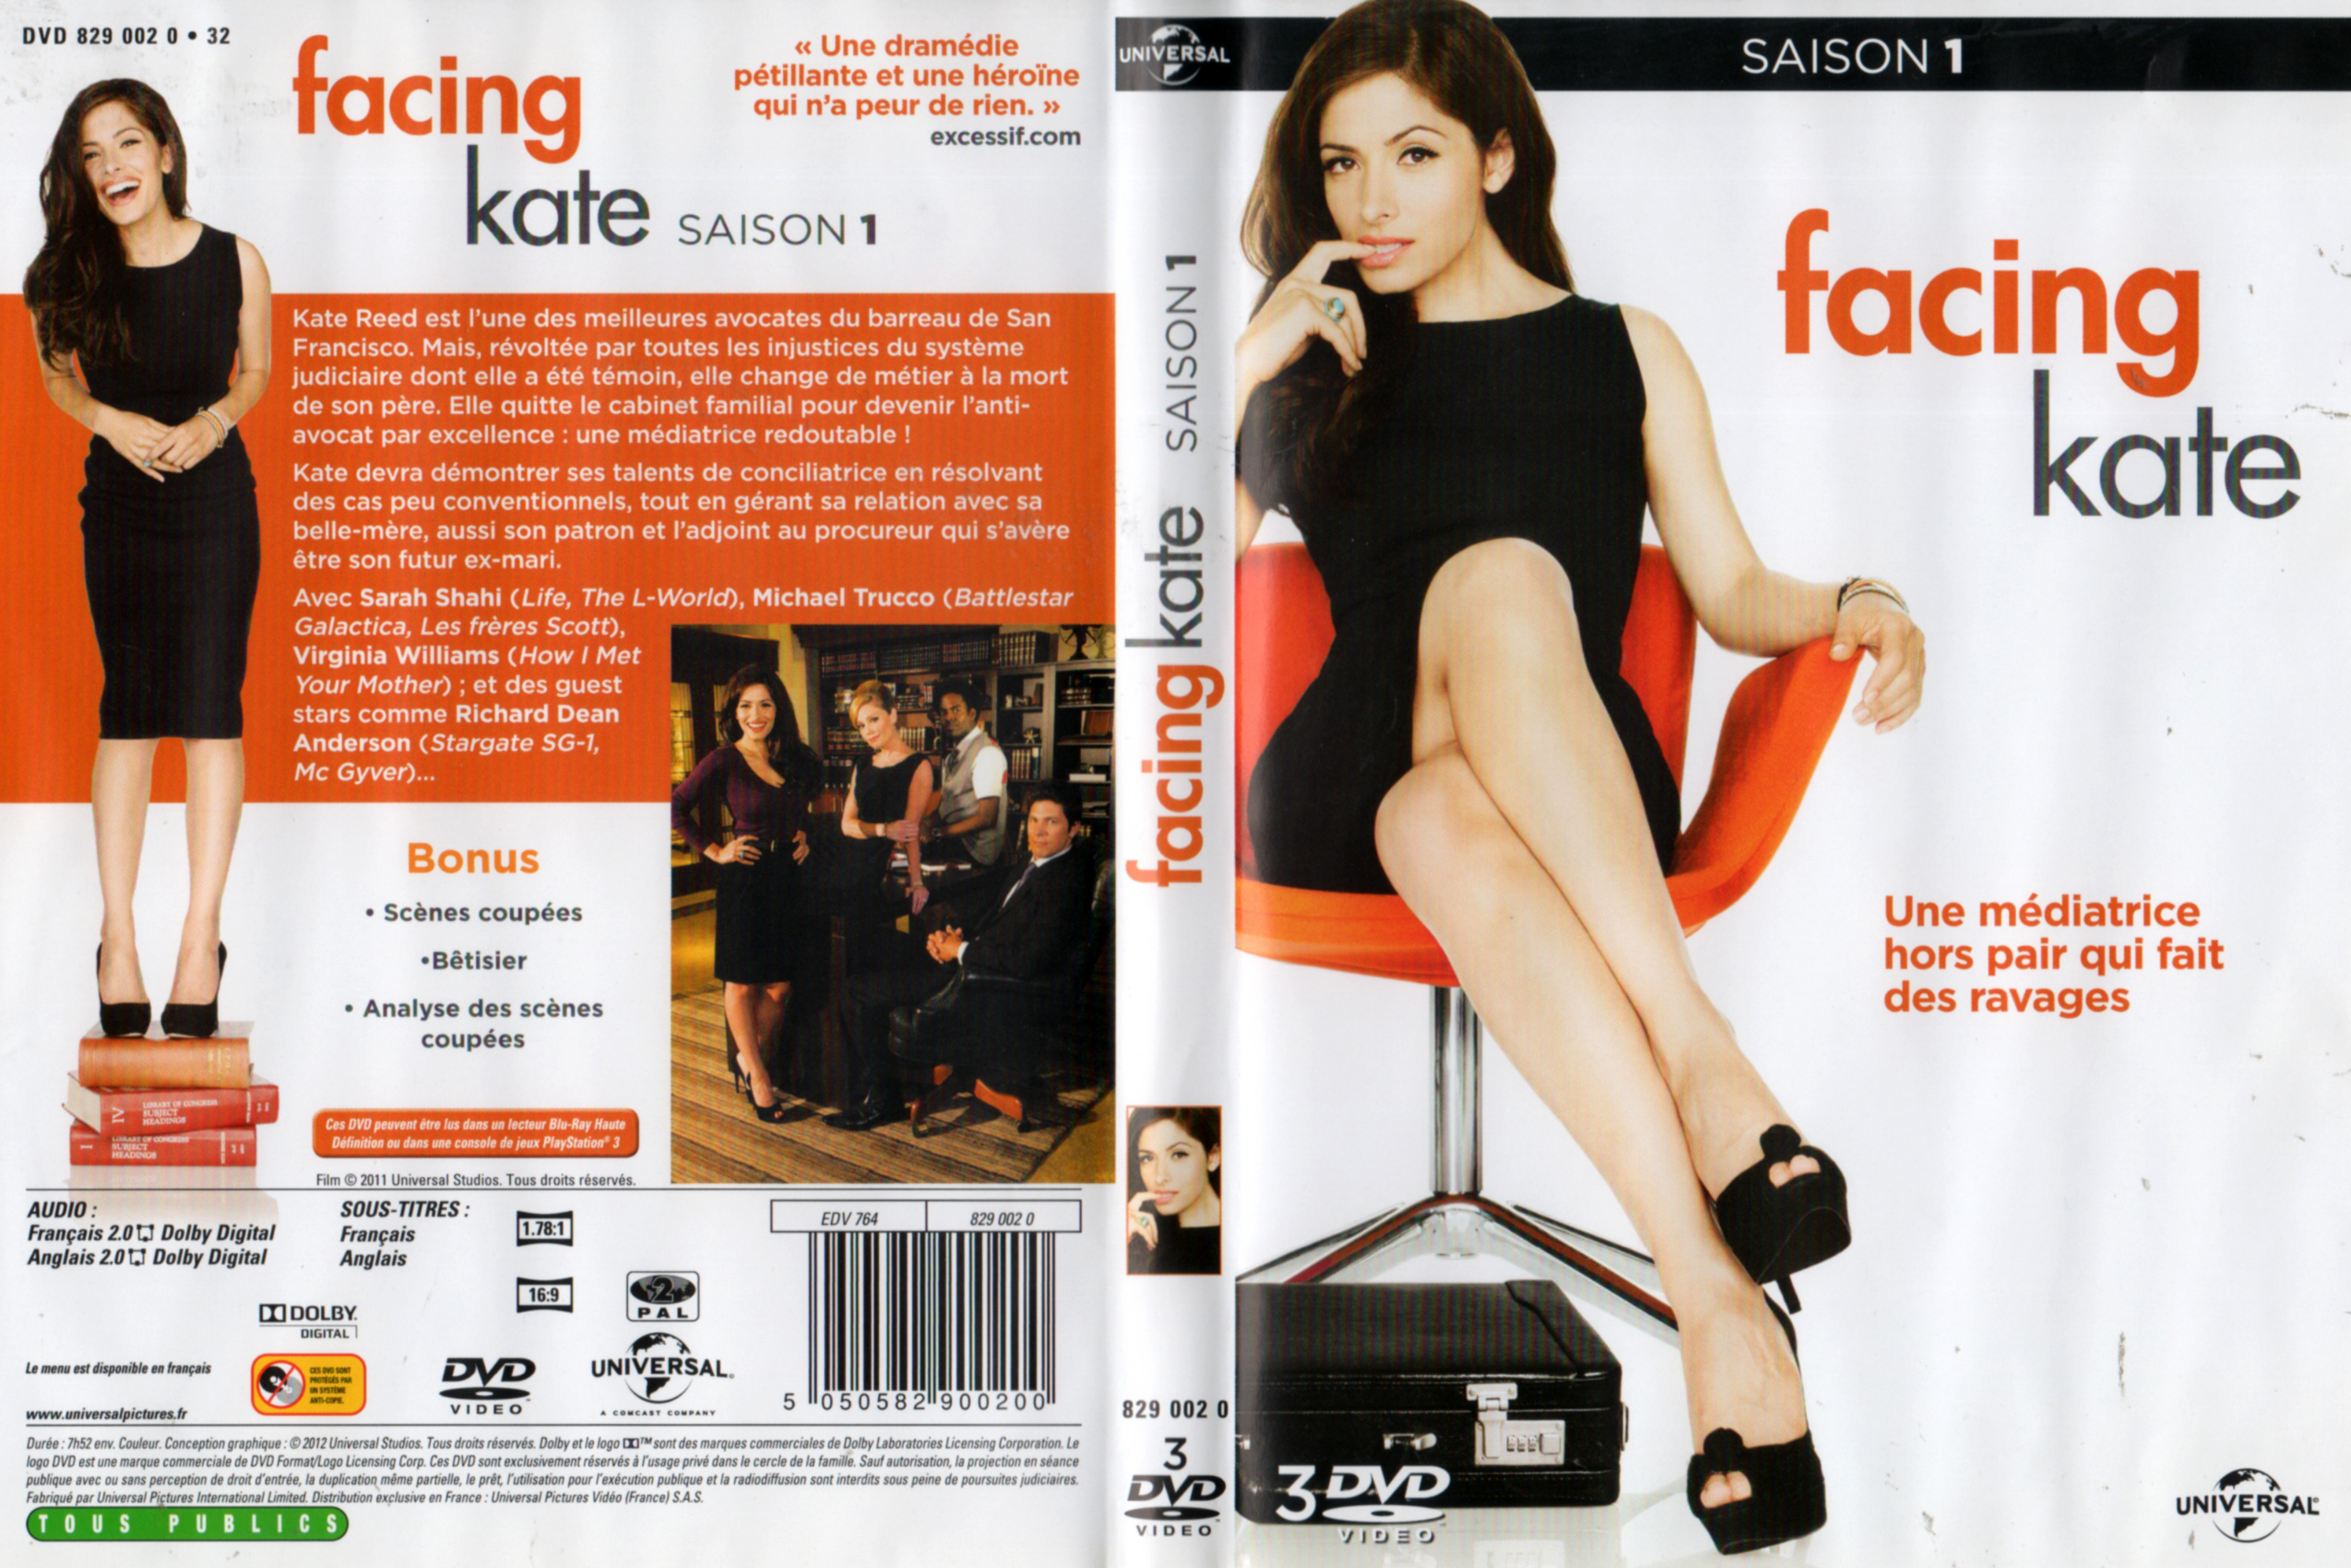 Jaquette DVD Facing Kate Saison 1